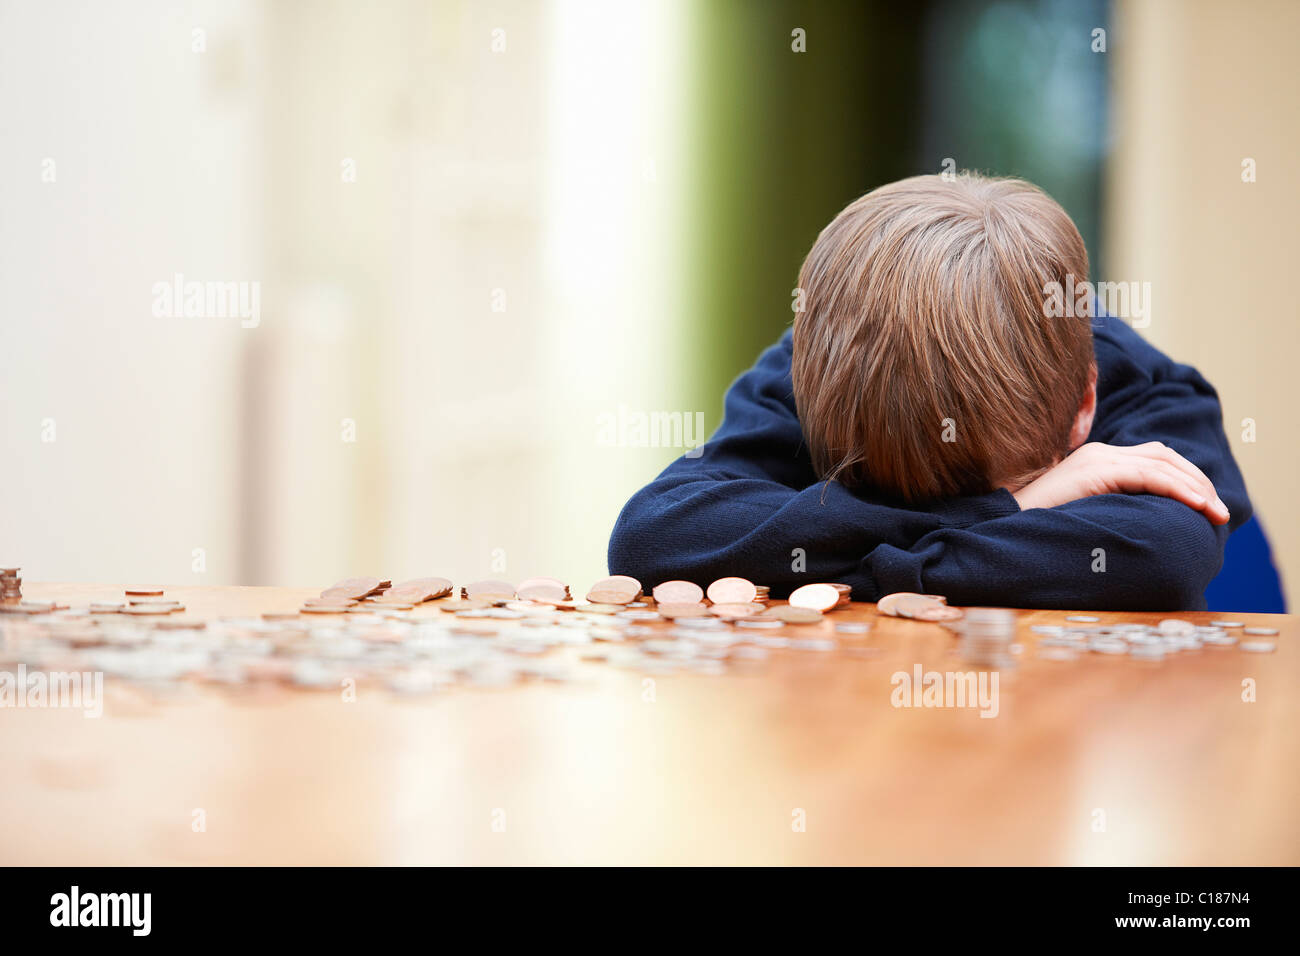 Kopf des jungen auf Armen umgeben von Münzen Stockfoto